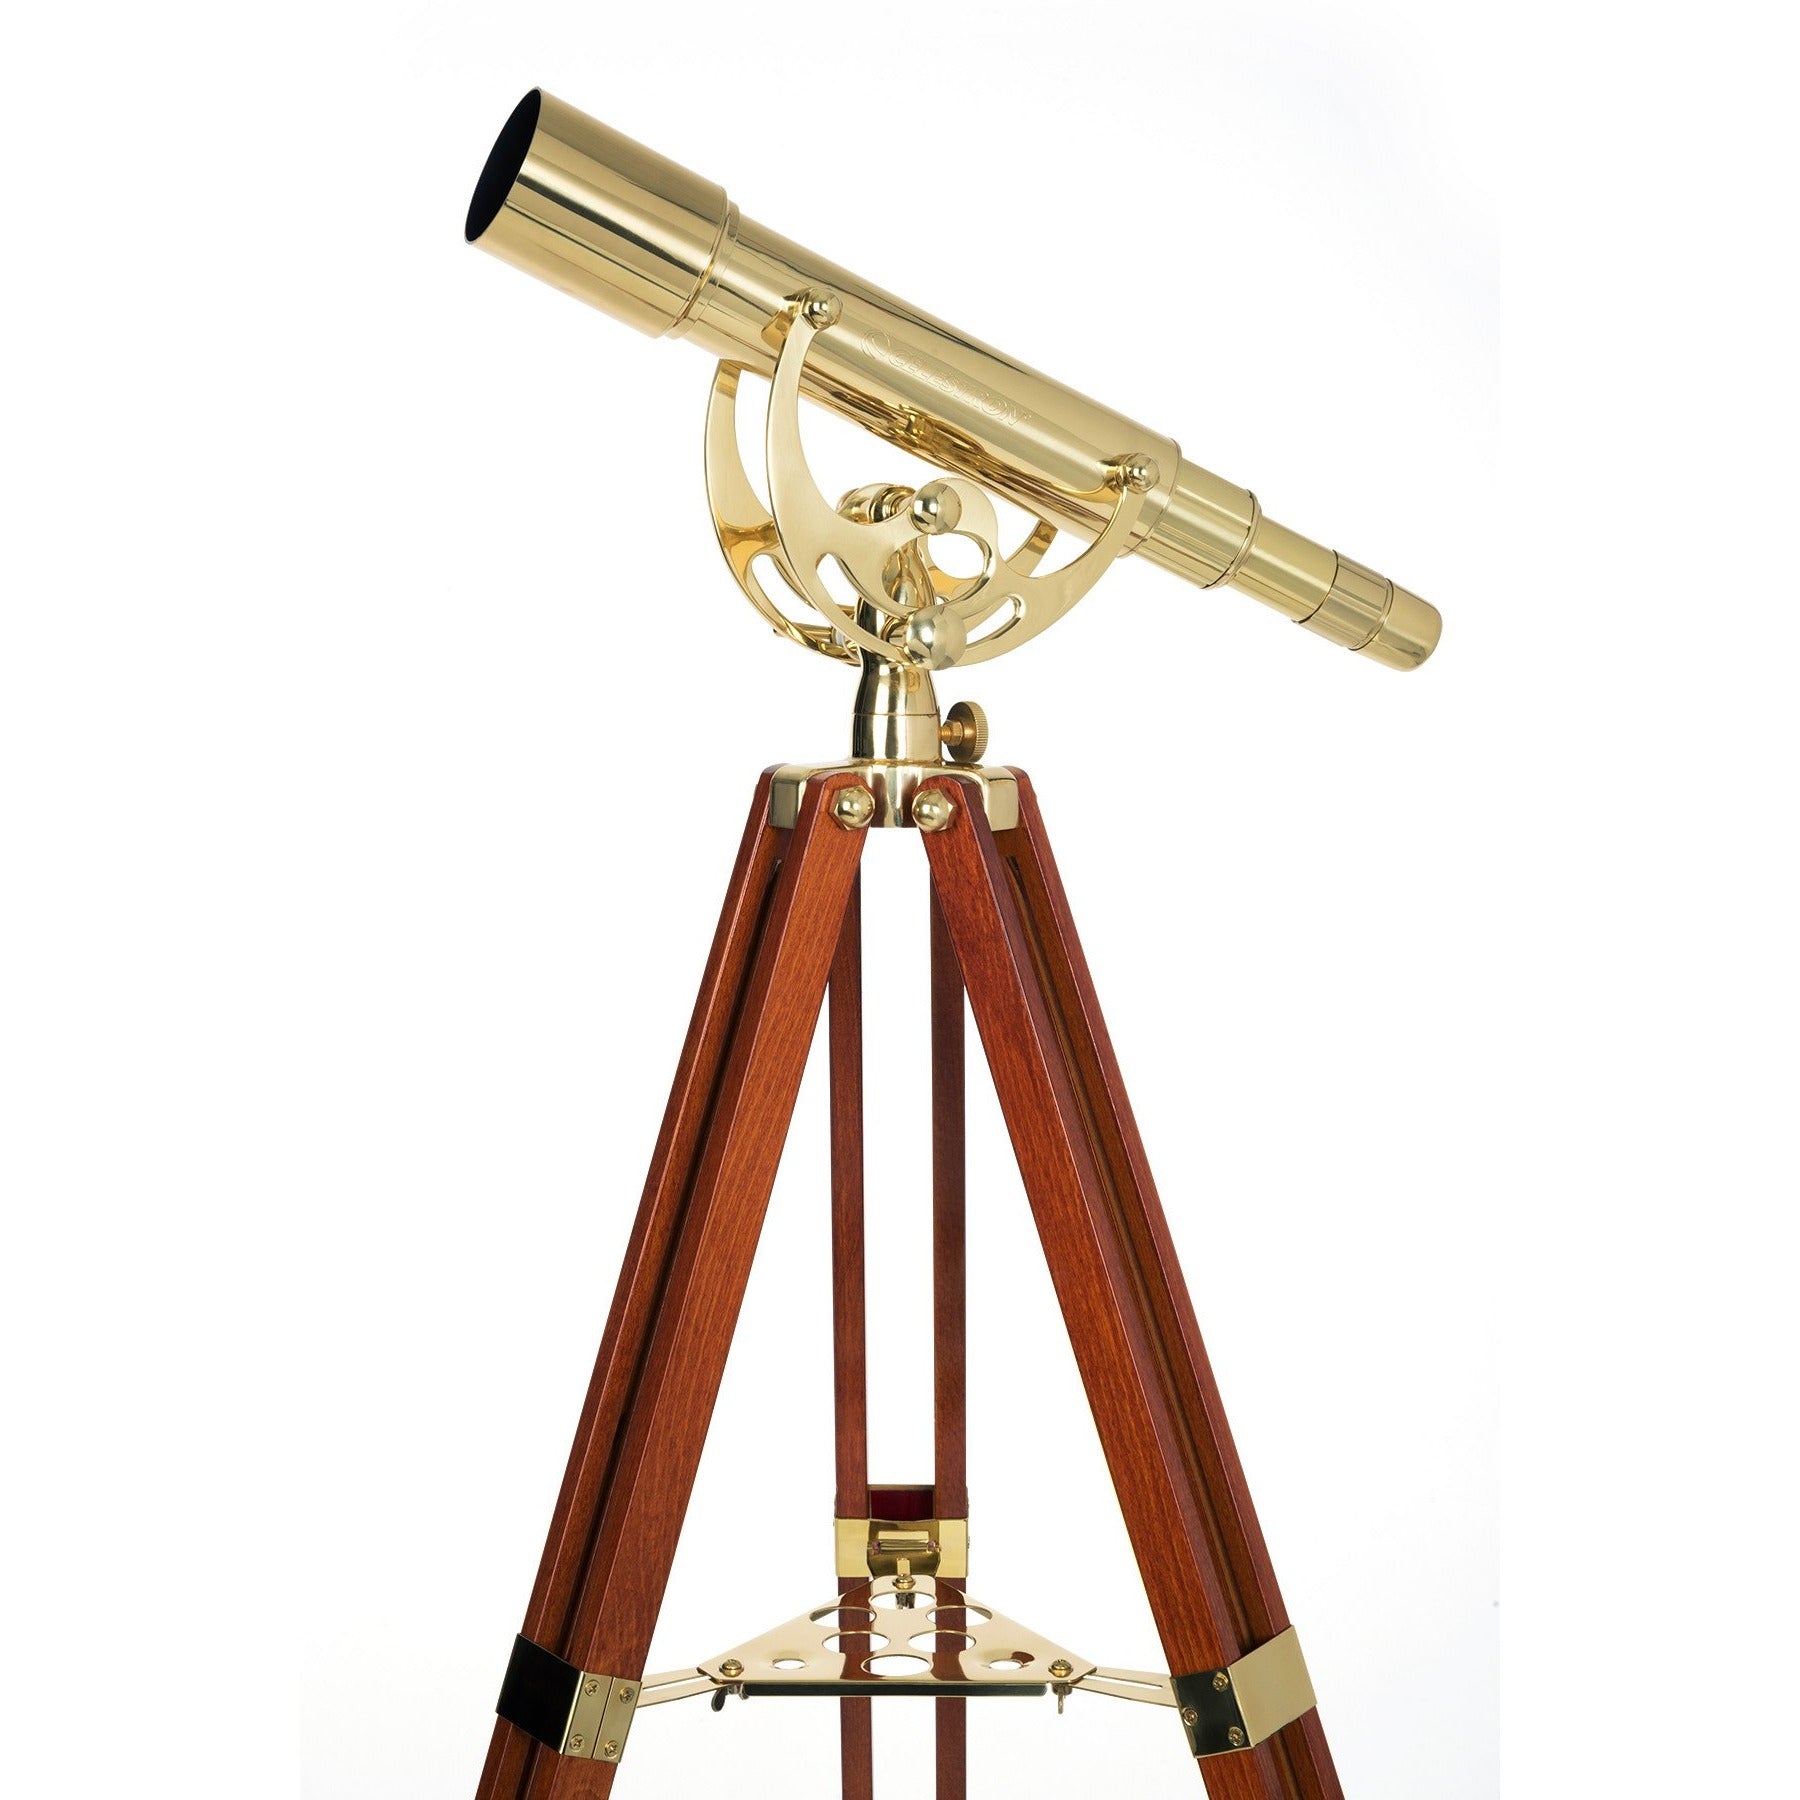 fonds delicaat ziek Ambassador Executive 50 Telescope | Celestron